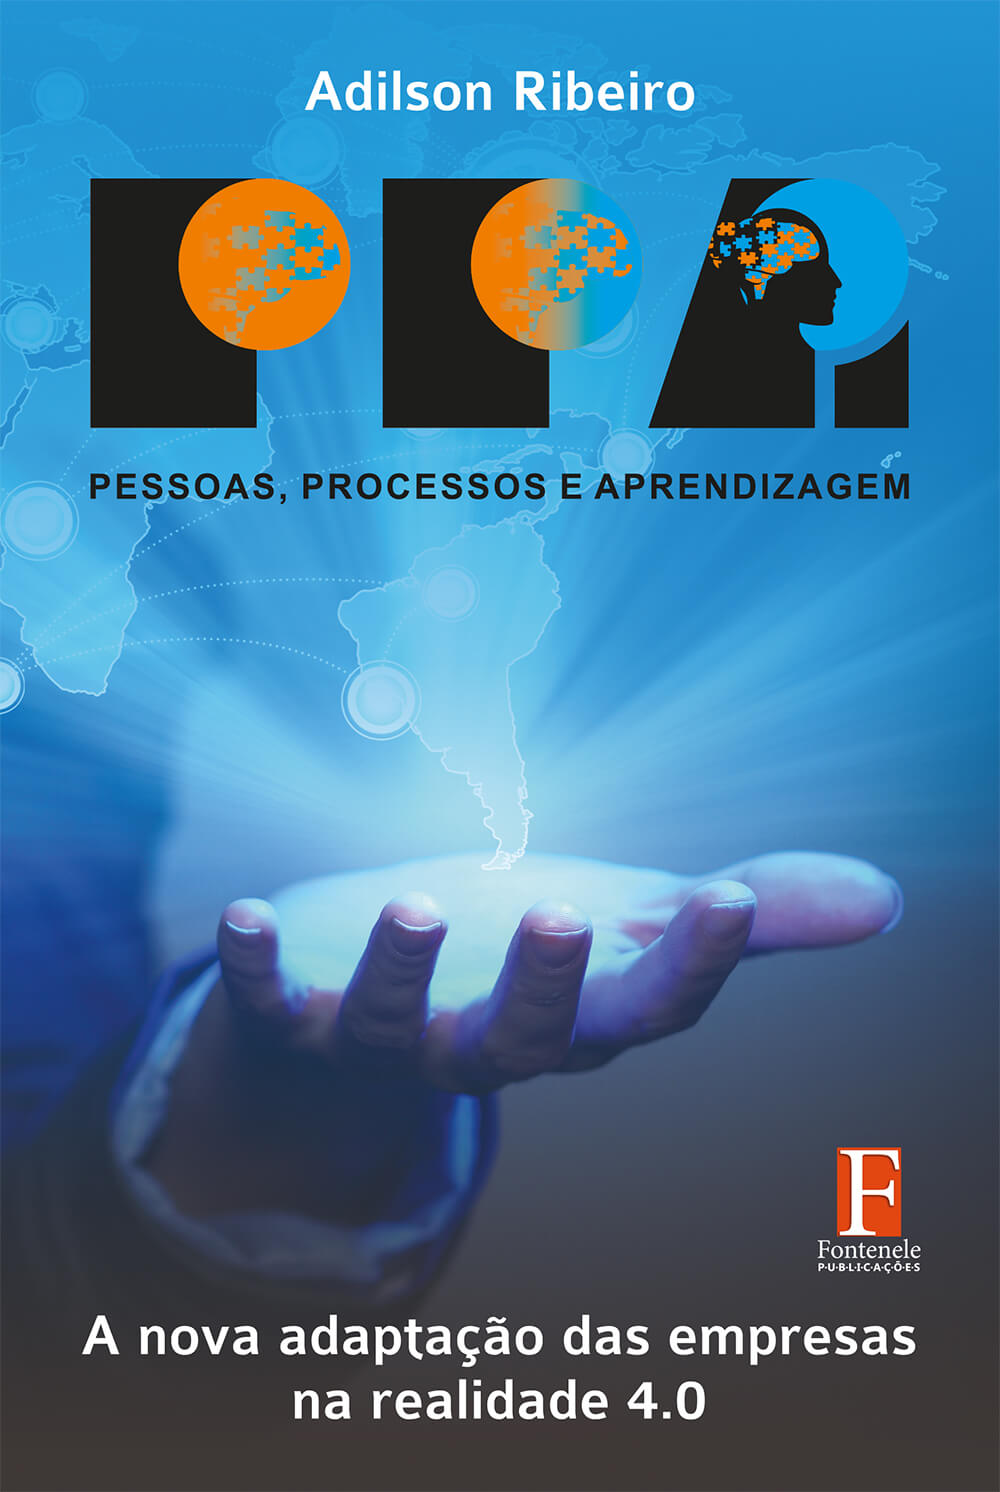 Fontenele Publicações / 11 95150-3481 / 11  95150-4383 Educação - Pessoas, Processos e Aprendizagem